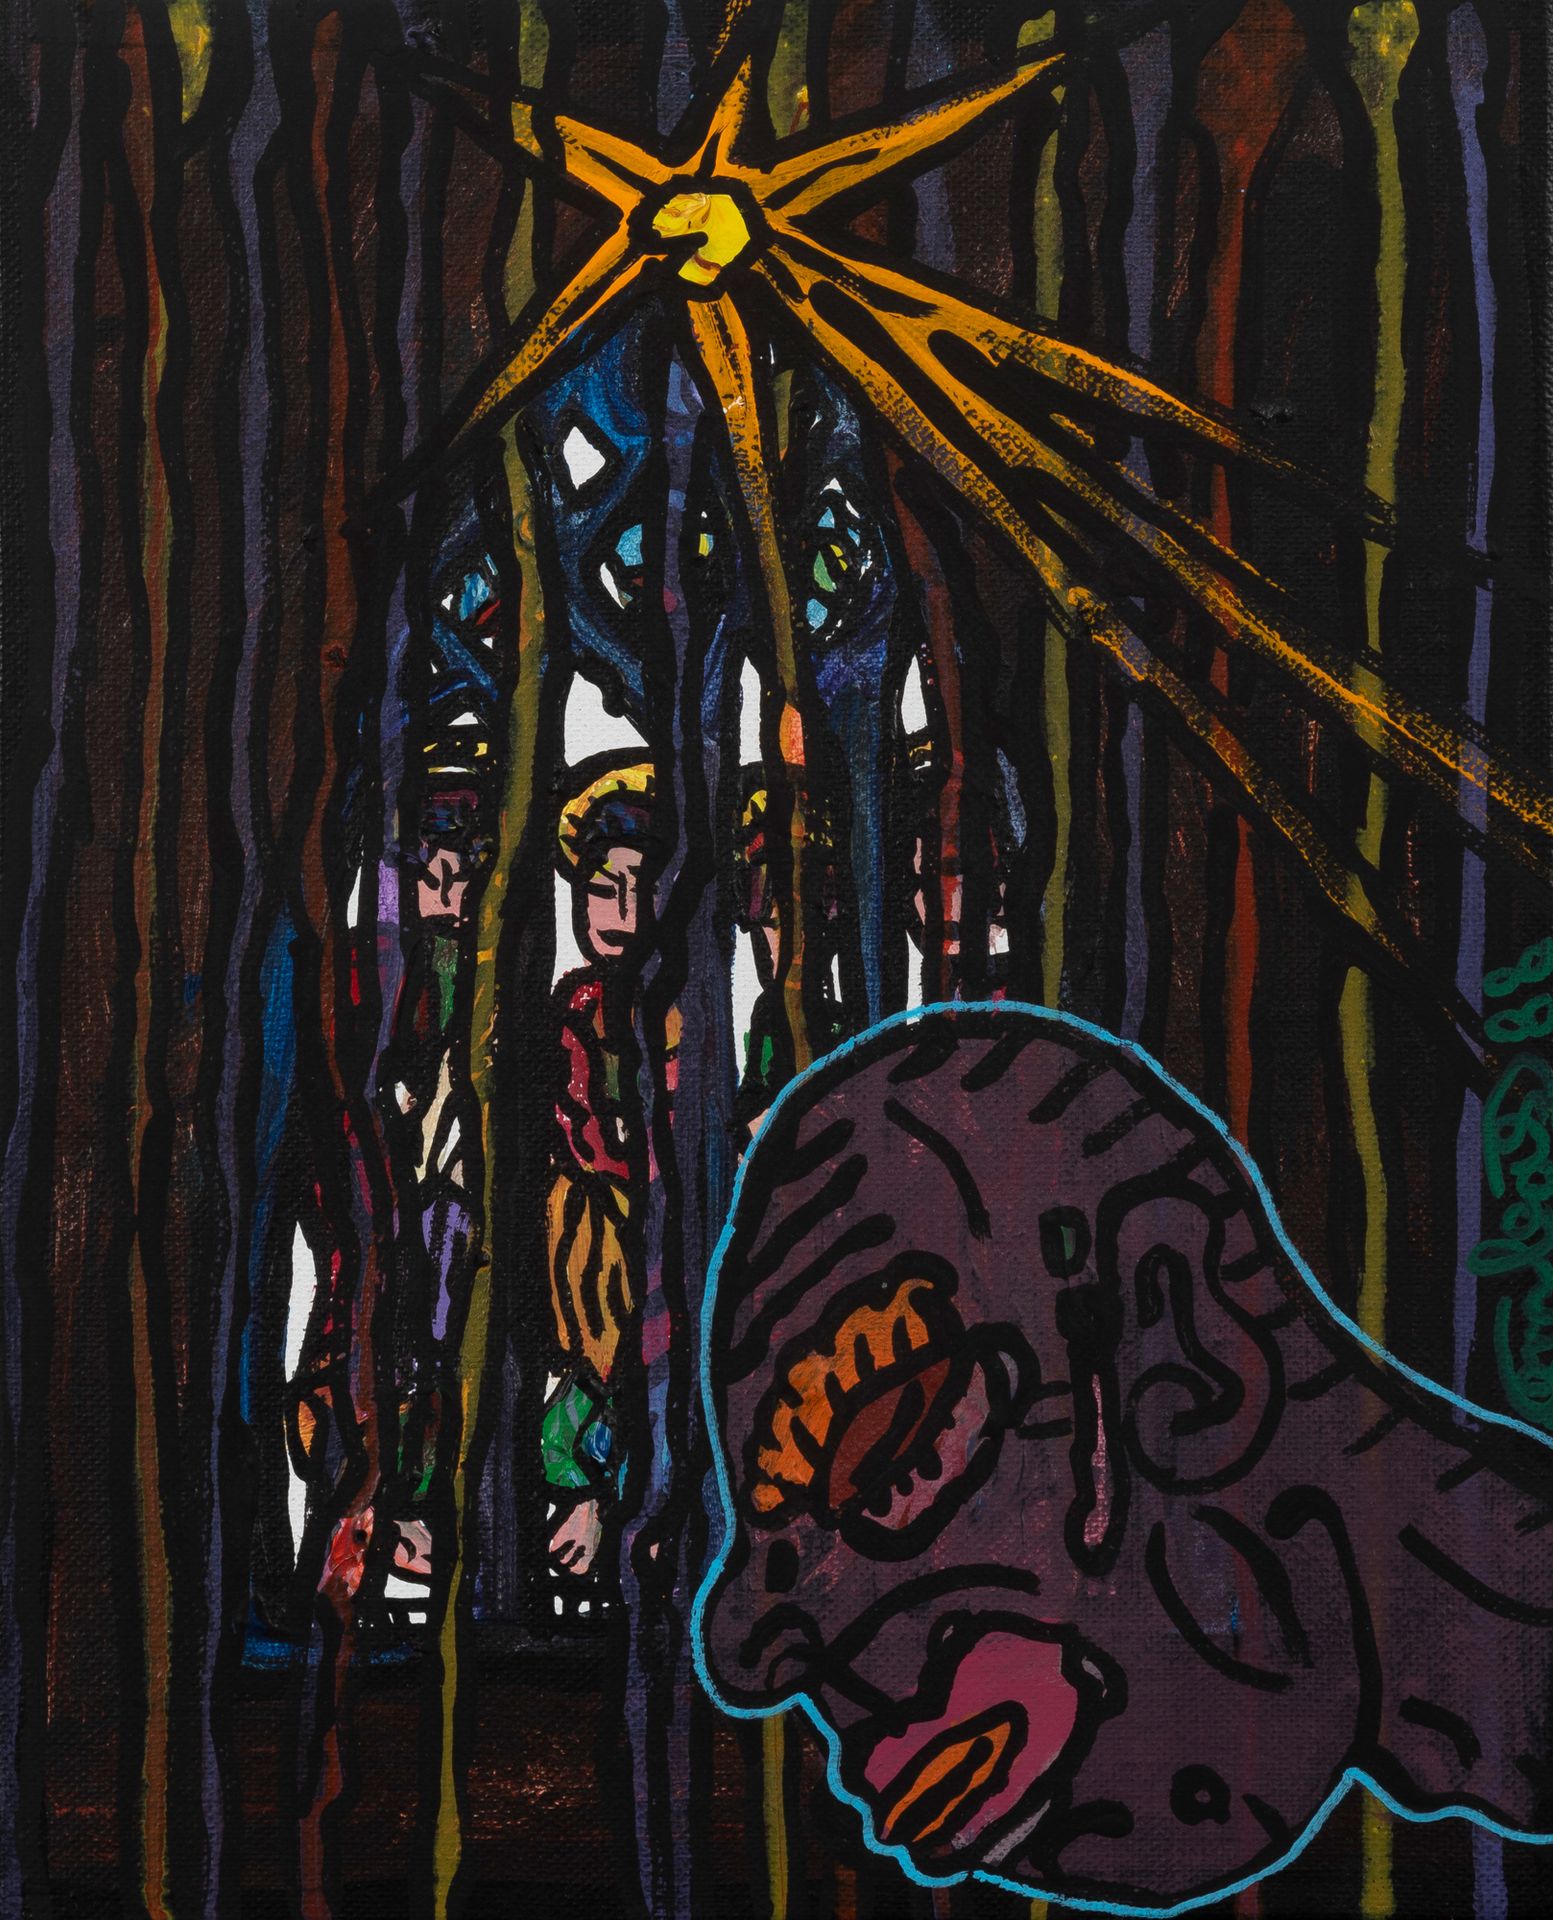 Robert COMBAS (Né en 1957) Le rêve de l'homme noir, 1988
Acrylic on canvas Signe&hellip;